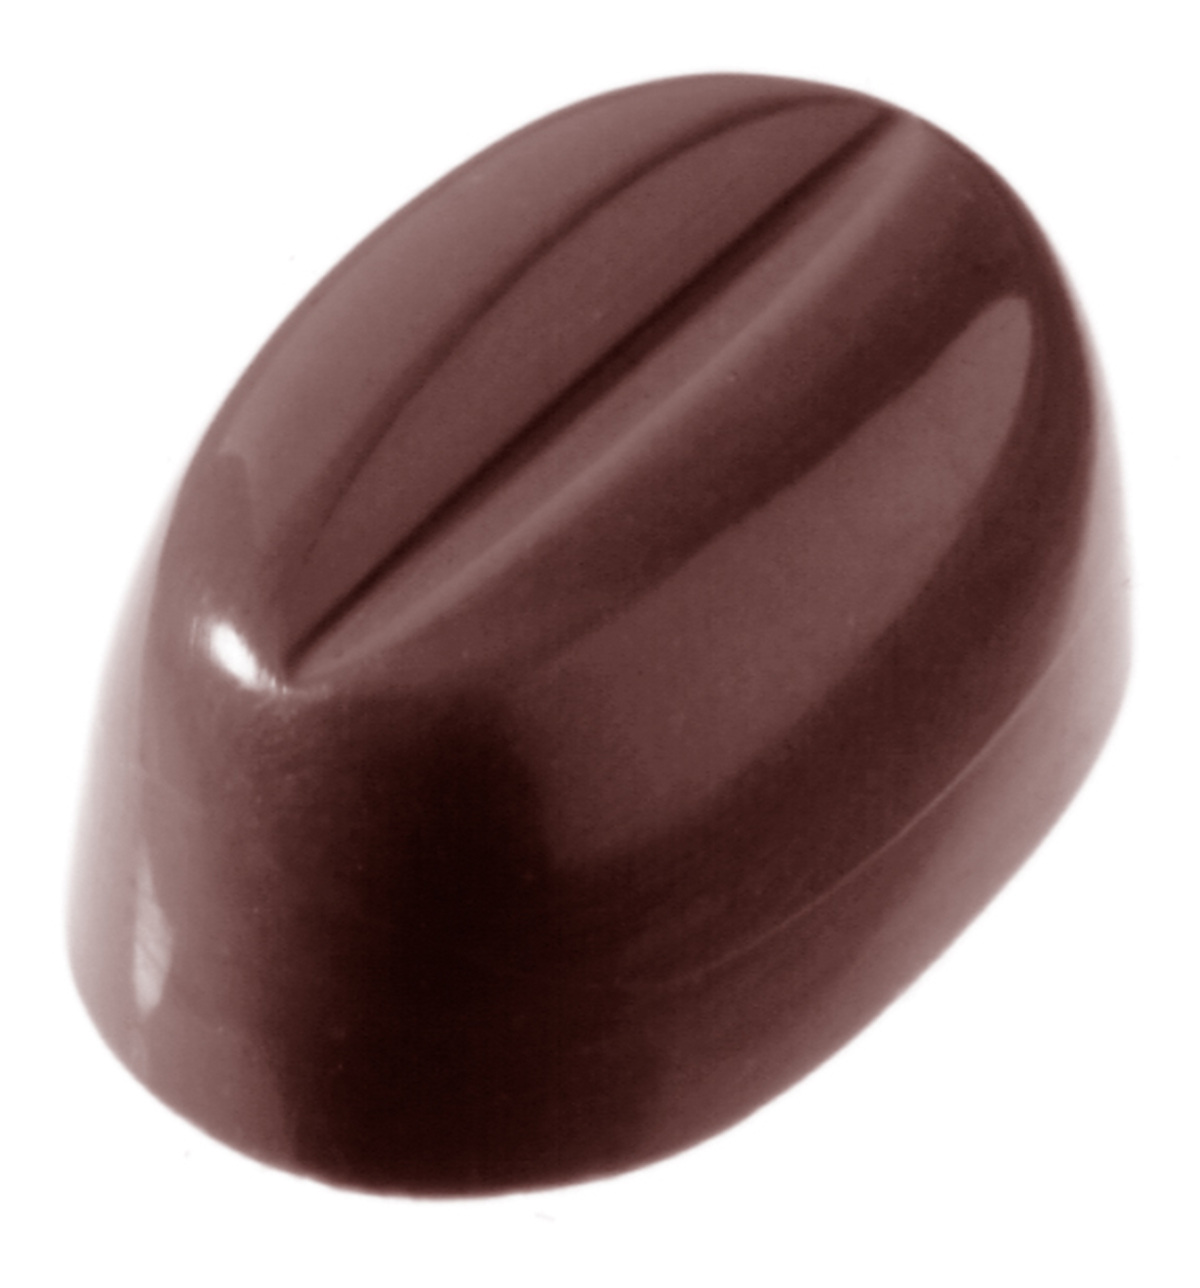 Billede af Professionel chokoladeform i polycarbonat - Coffee bean CW1327